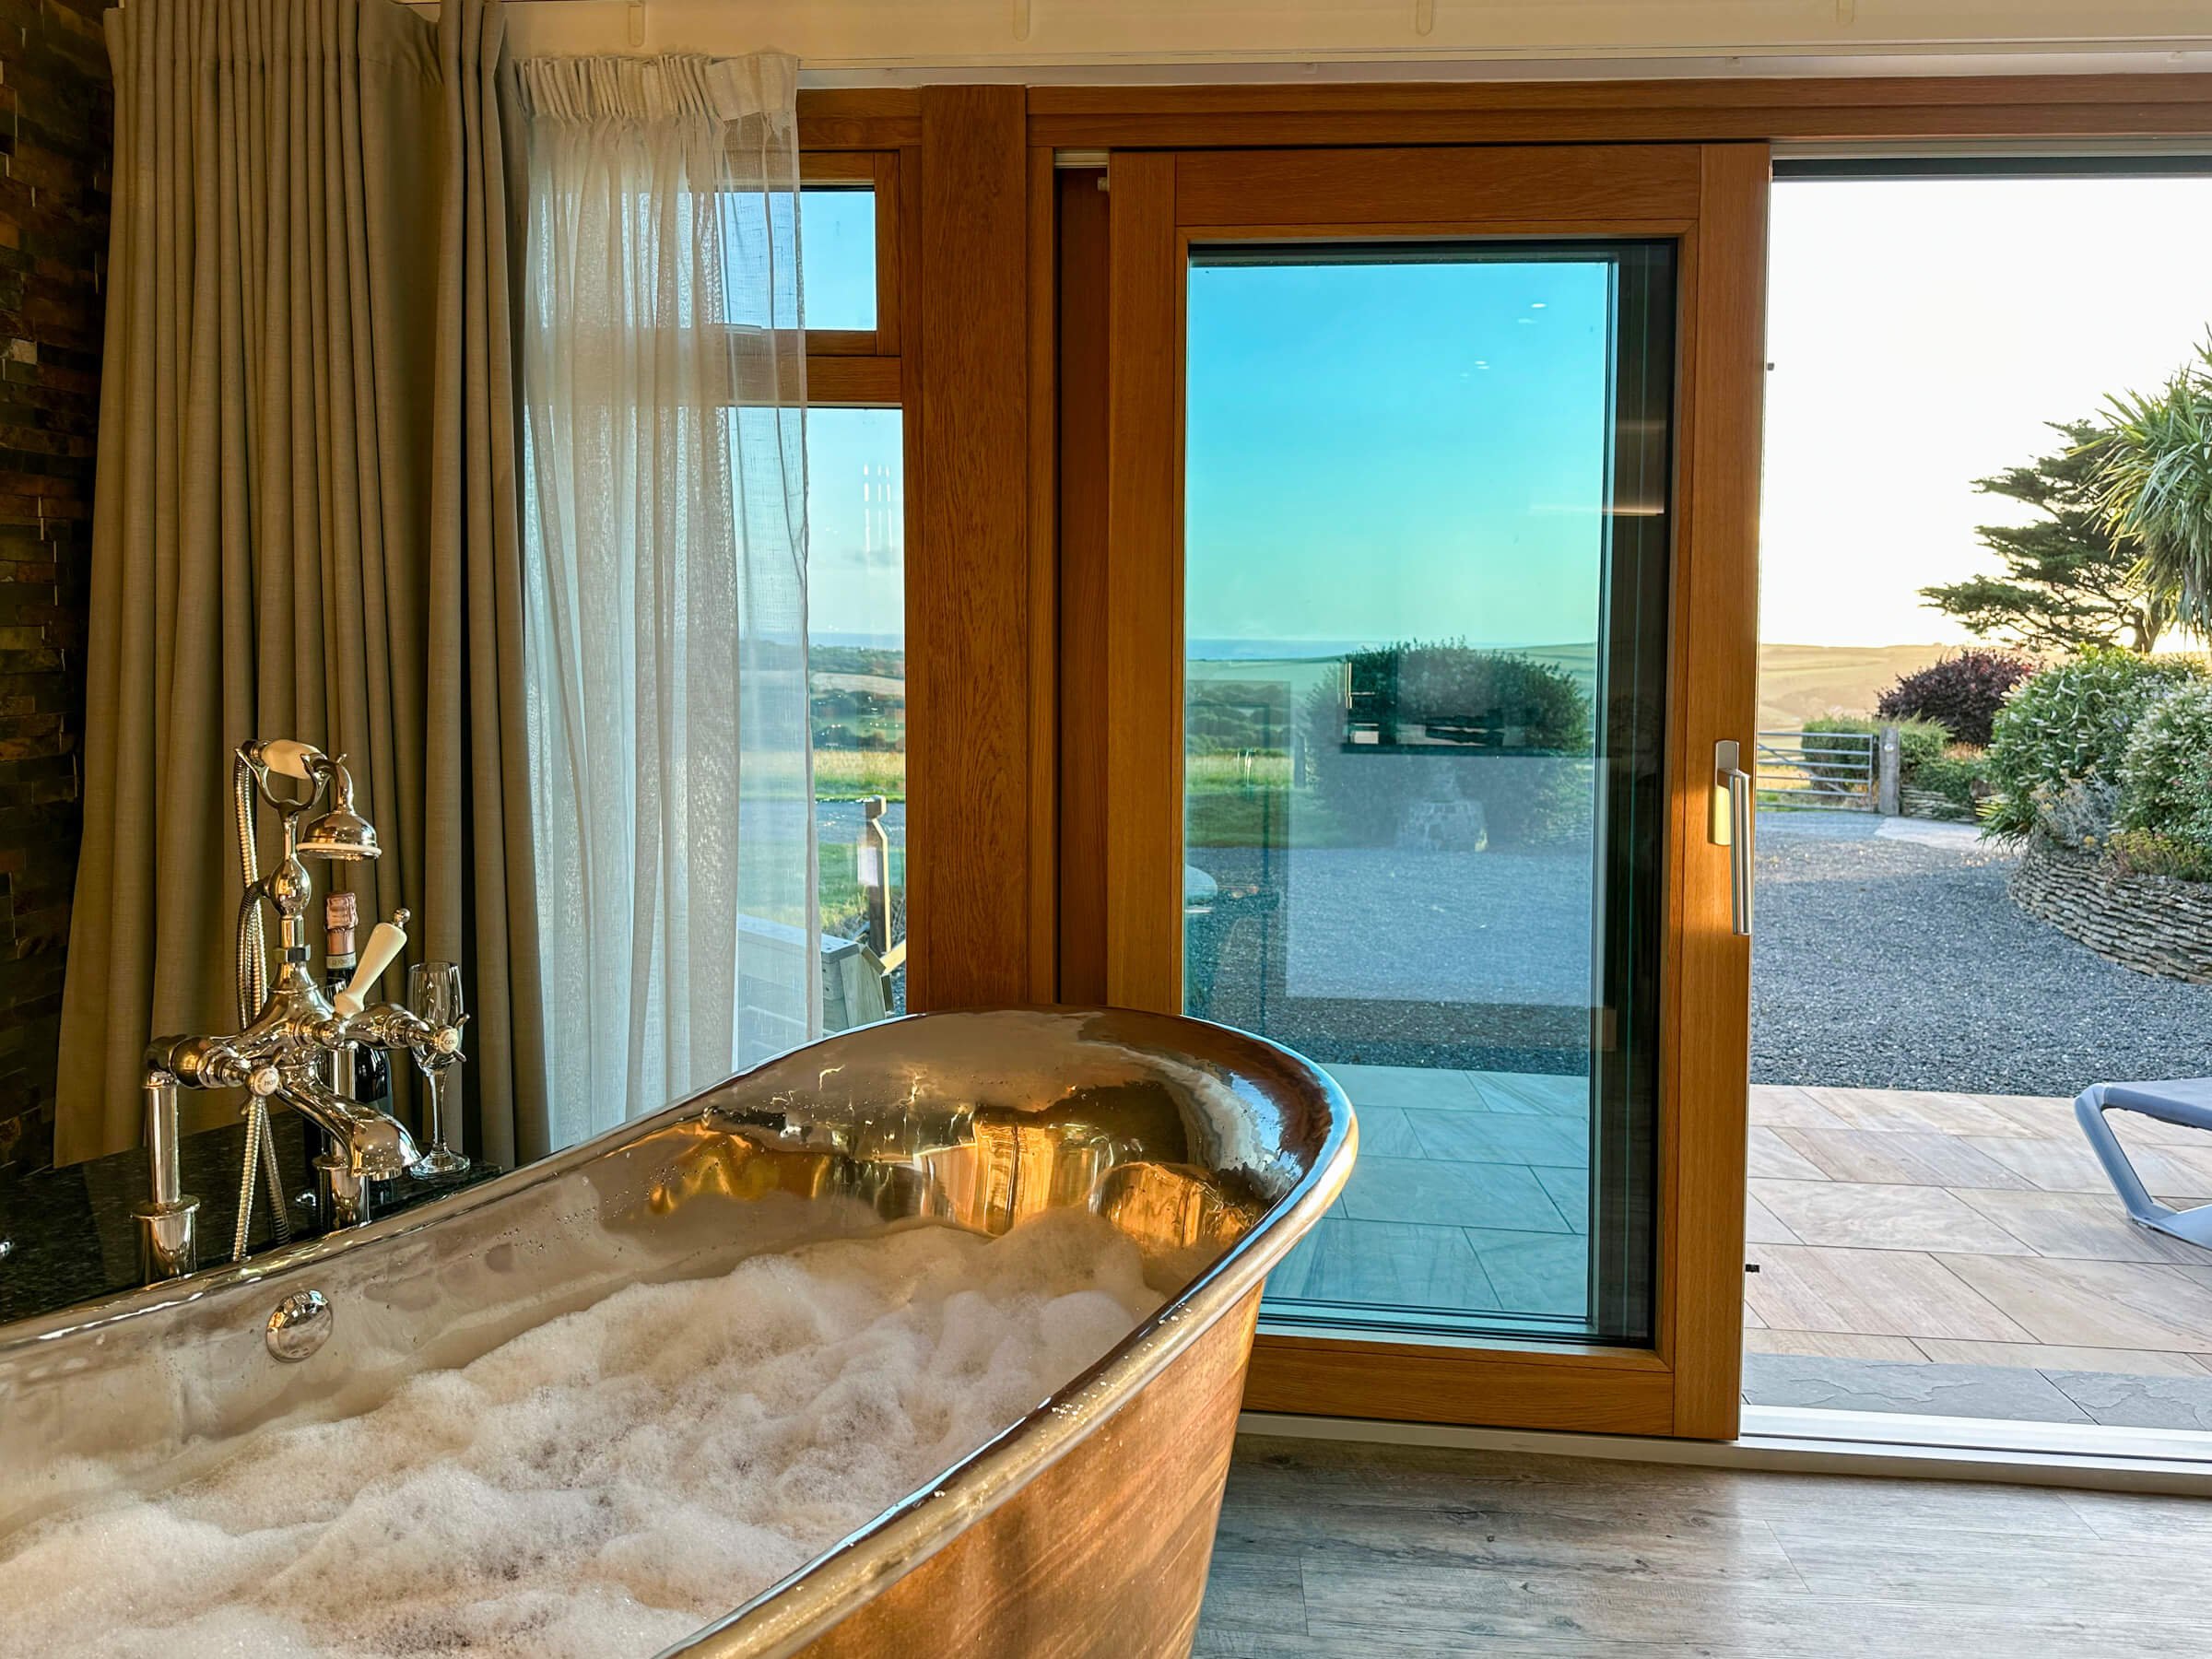 Air-spa bath tub with sea view